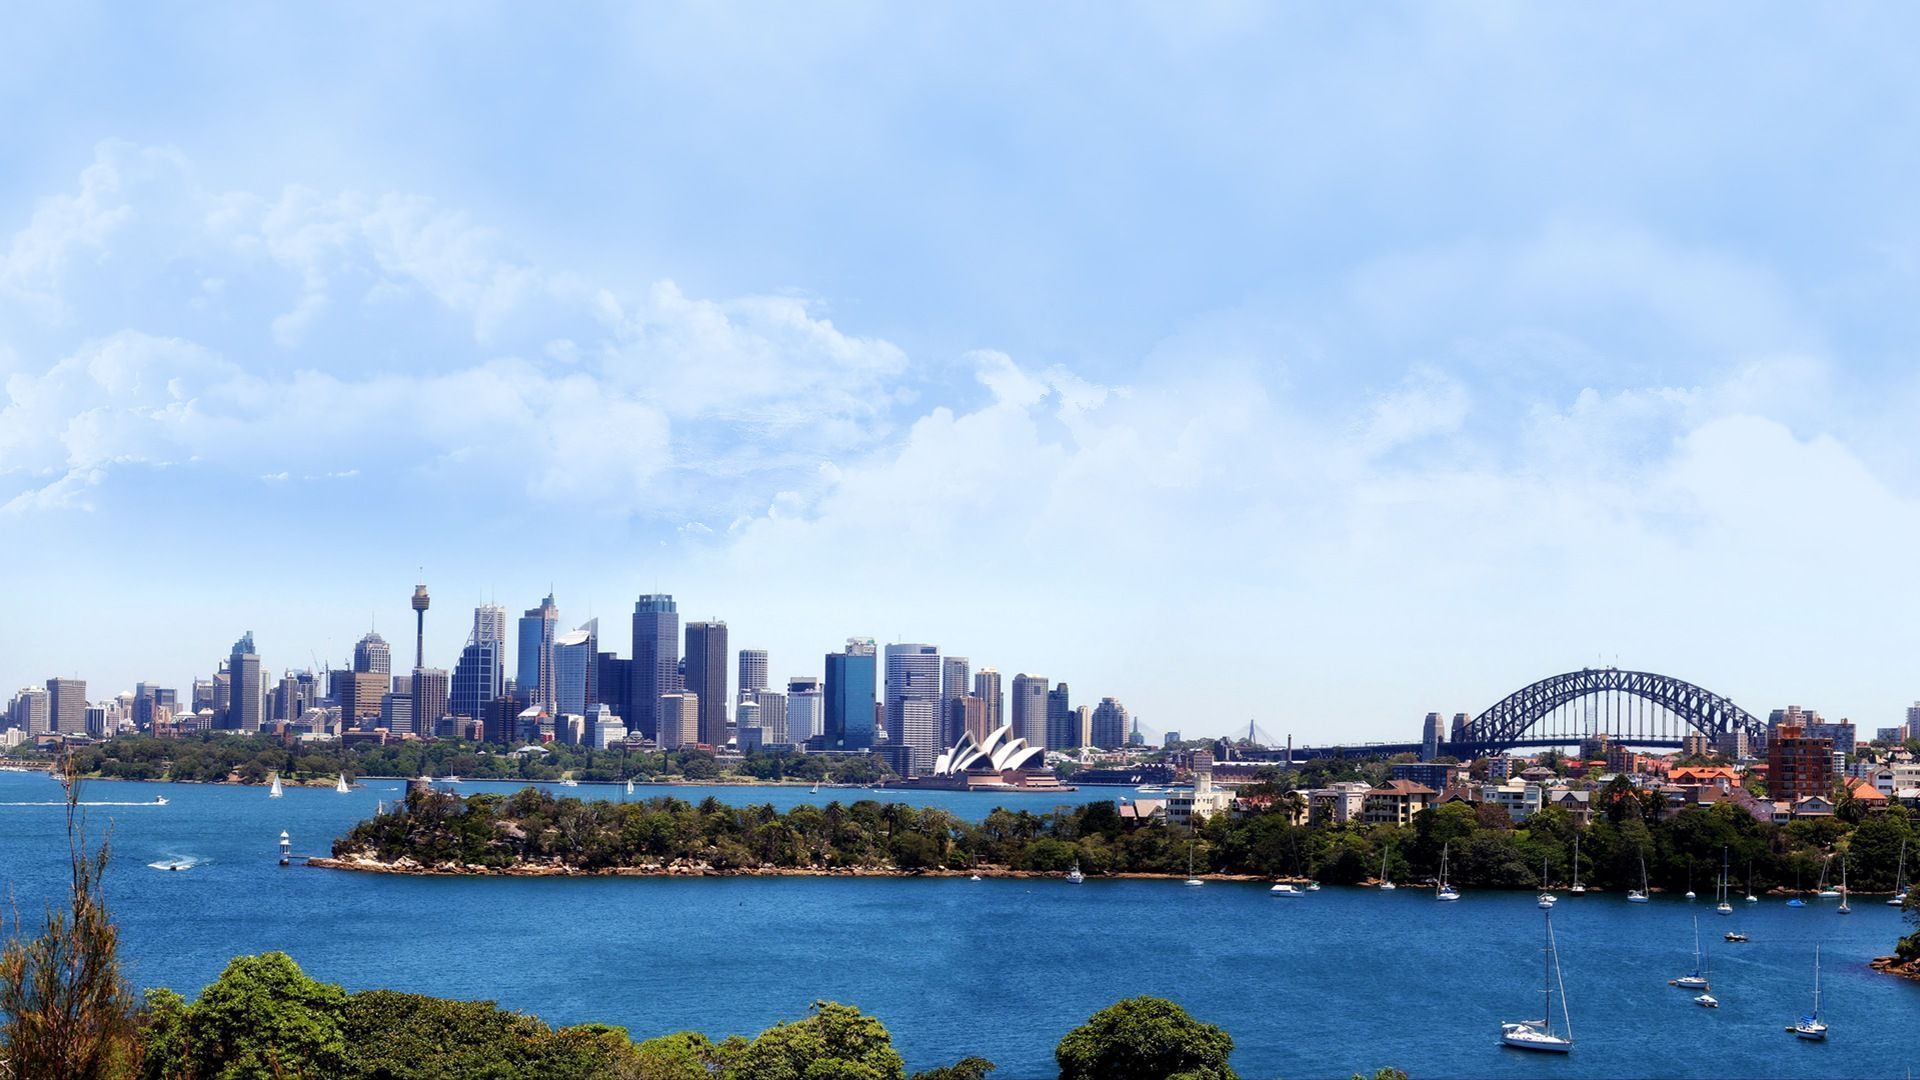 Sydney desktop wallpapers in HD - Australia beach city